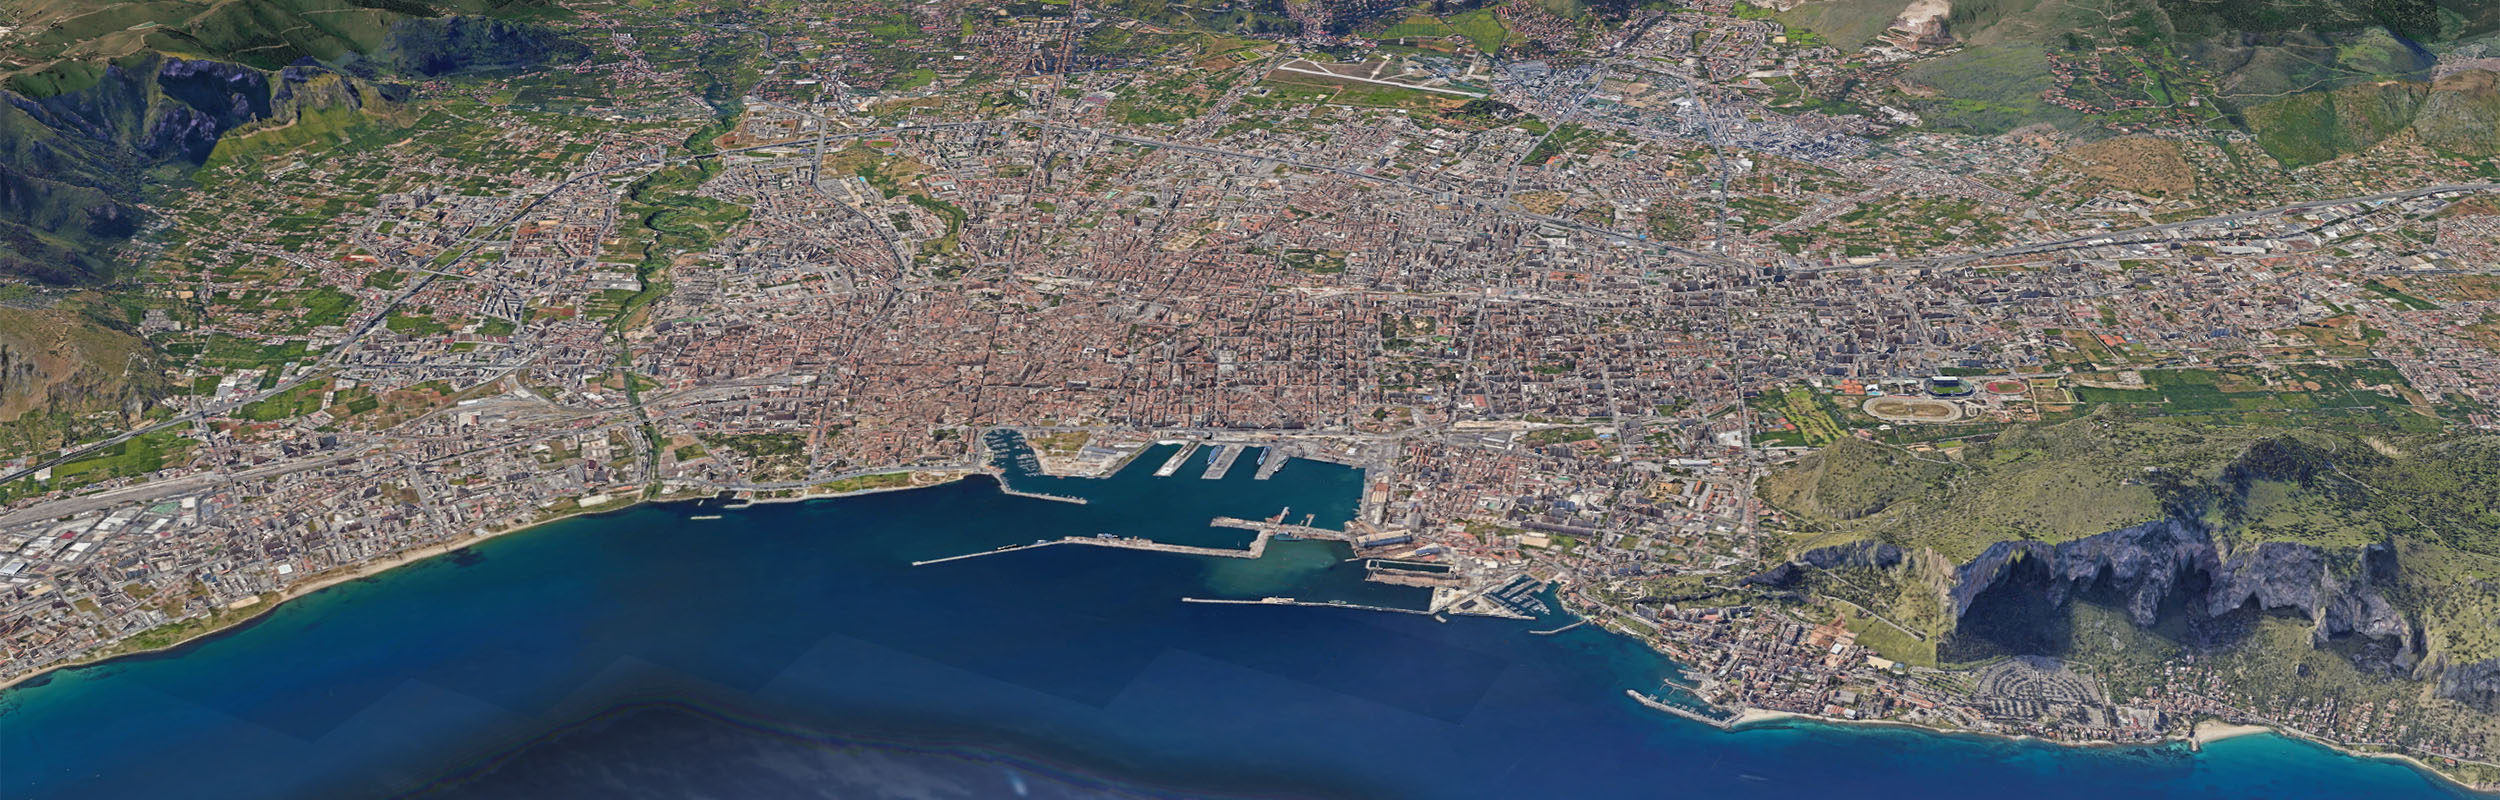 Direttive Generali per la formazione del Piano Urbanistico Generale (PUG) | Immagine da Google Earth Studio